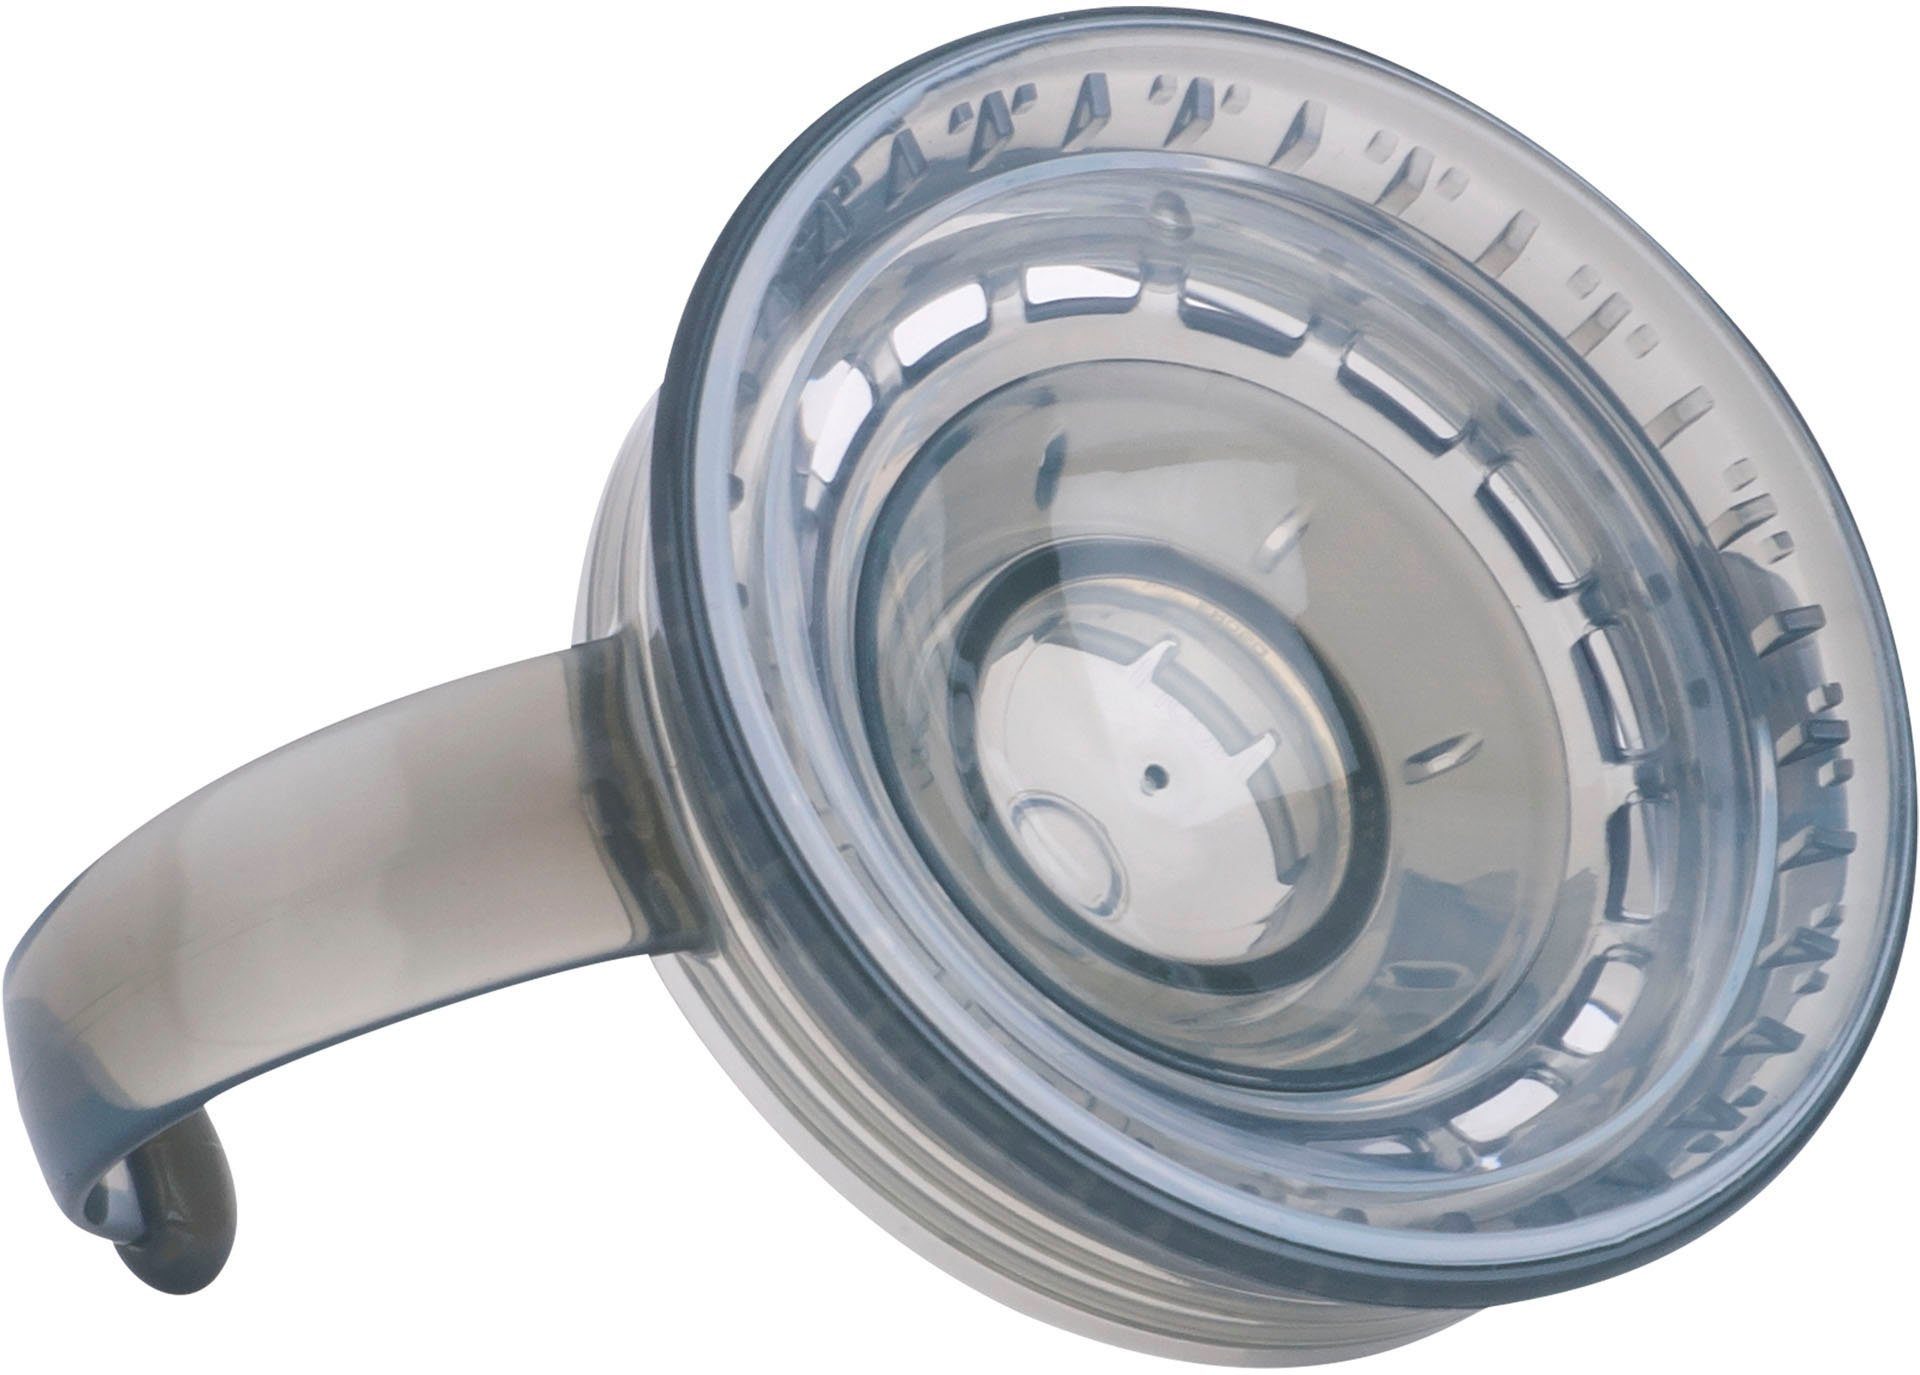 Handgriffen Trinklerntasse 360° grau, Kunststoff, mit Kinderbecher Nuby 240ml,